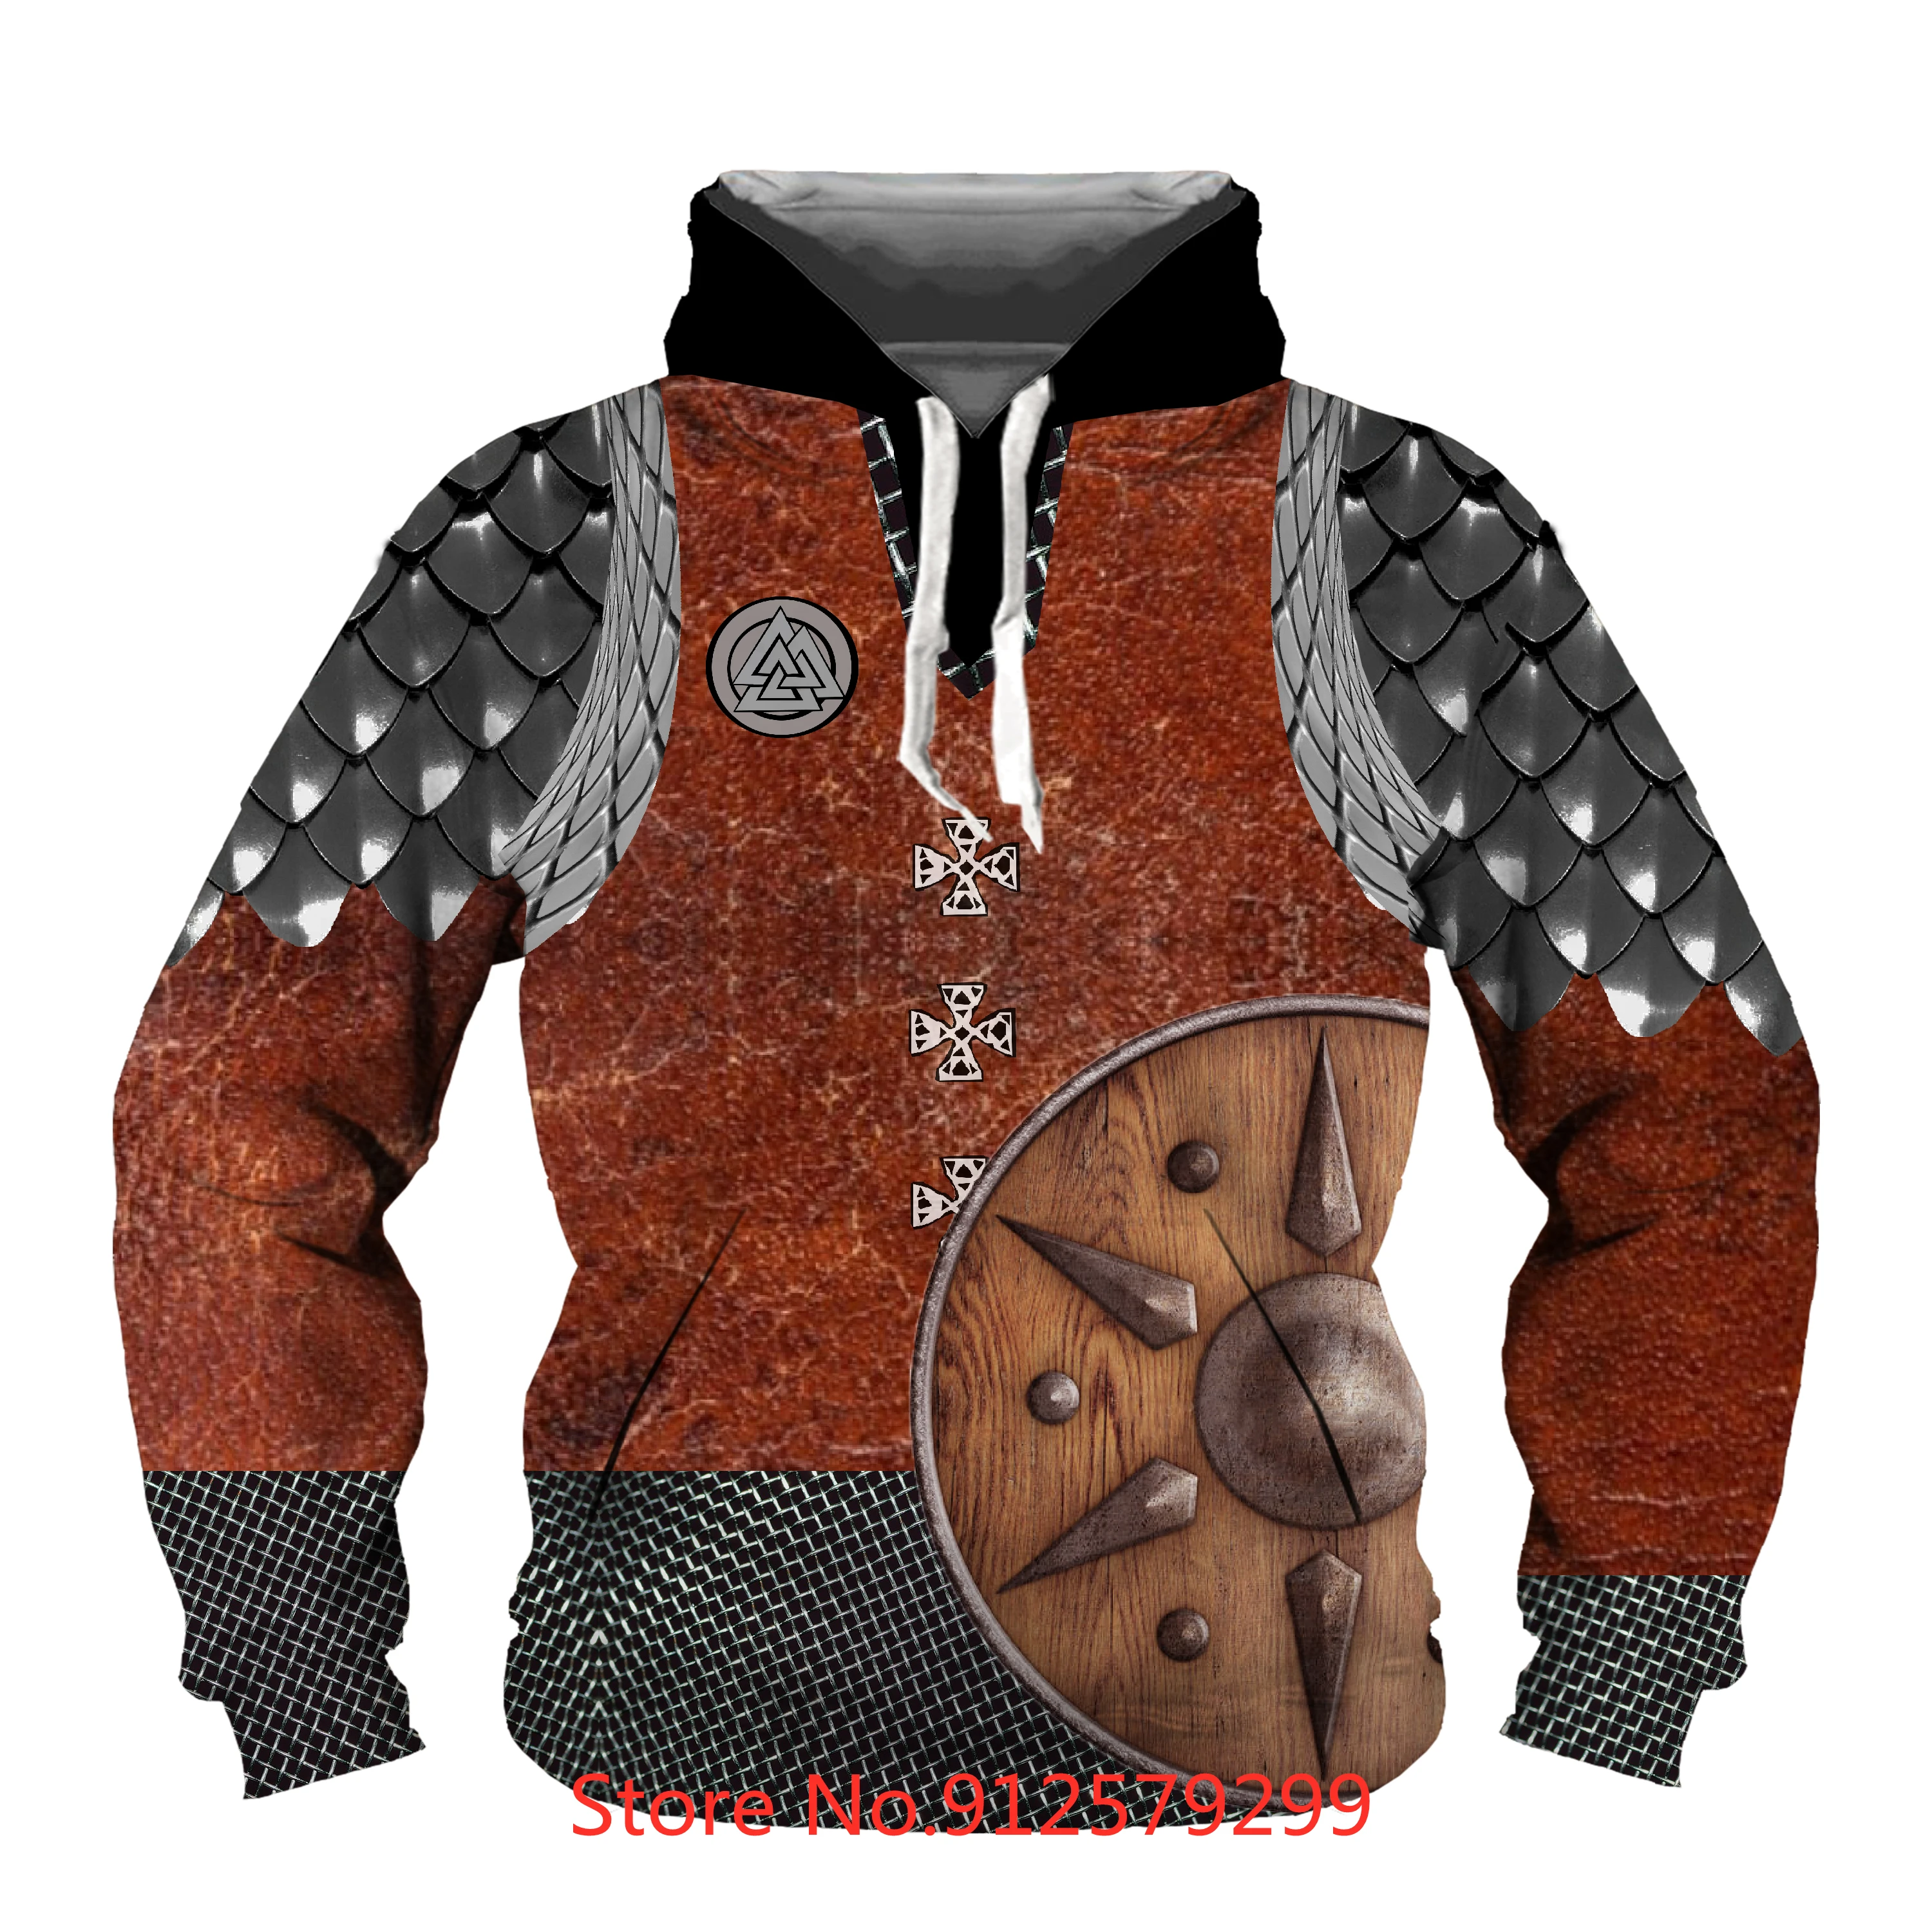 Men's Pullover Hoodie Retro Sweatshirt Geometric Armor 3D Print Hoodies Unisex Casual Long Sleeve